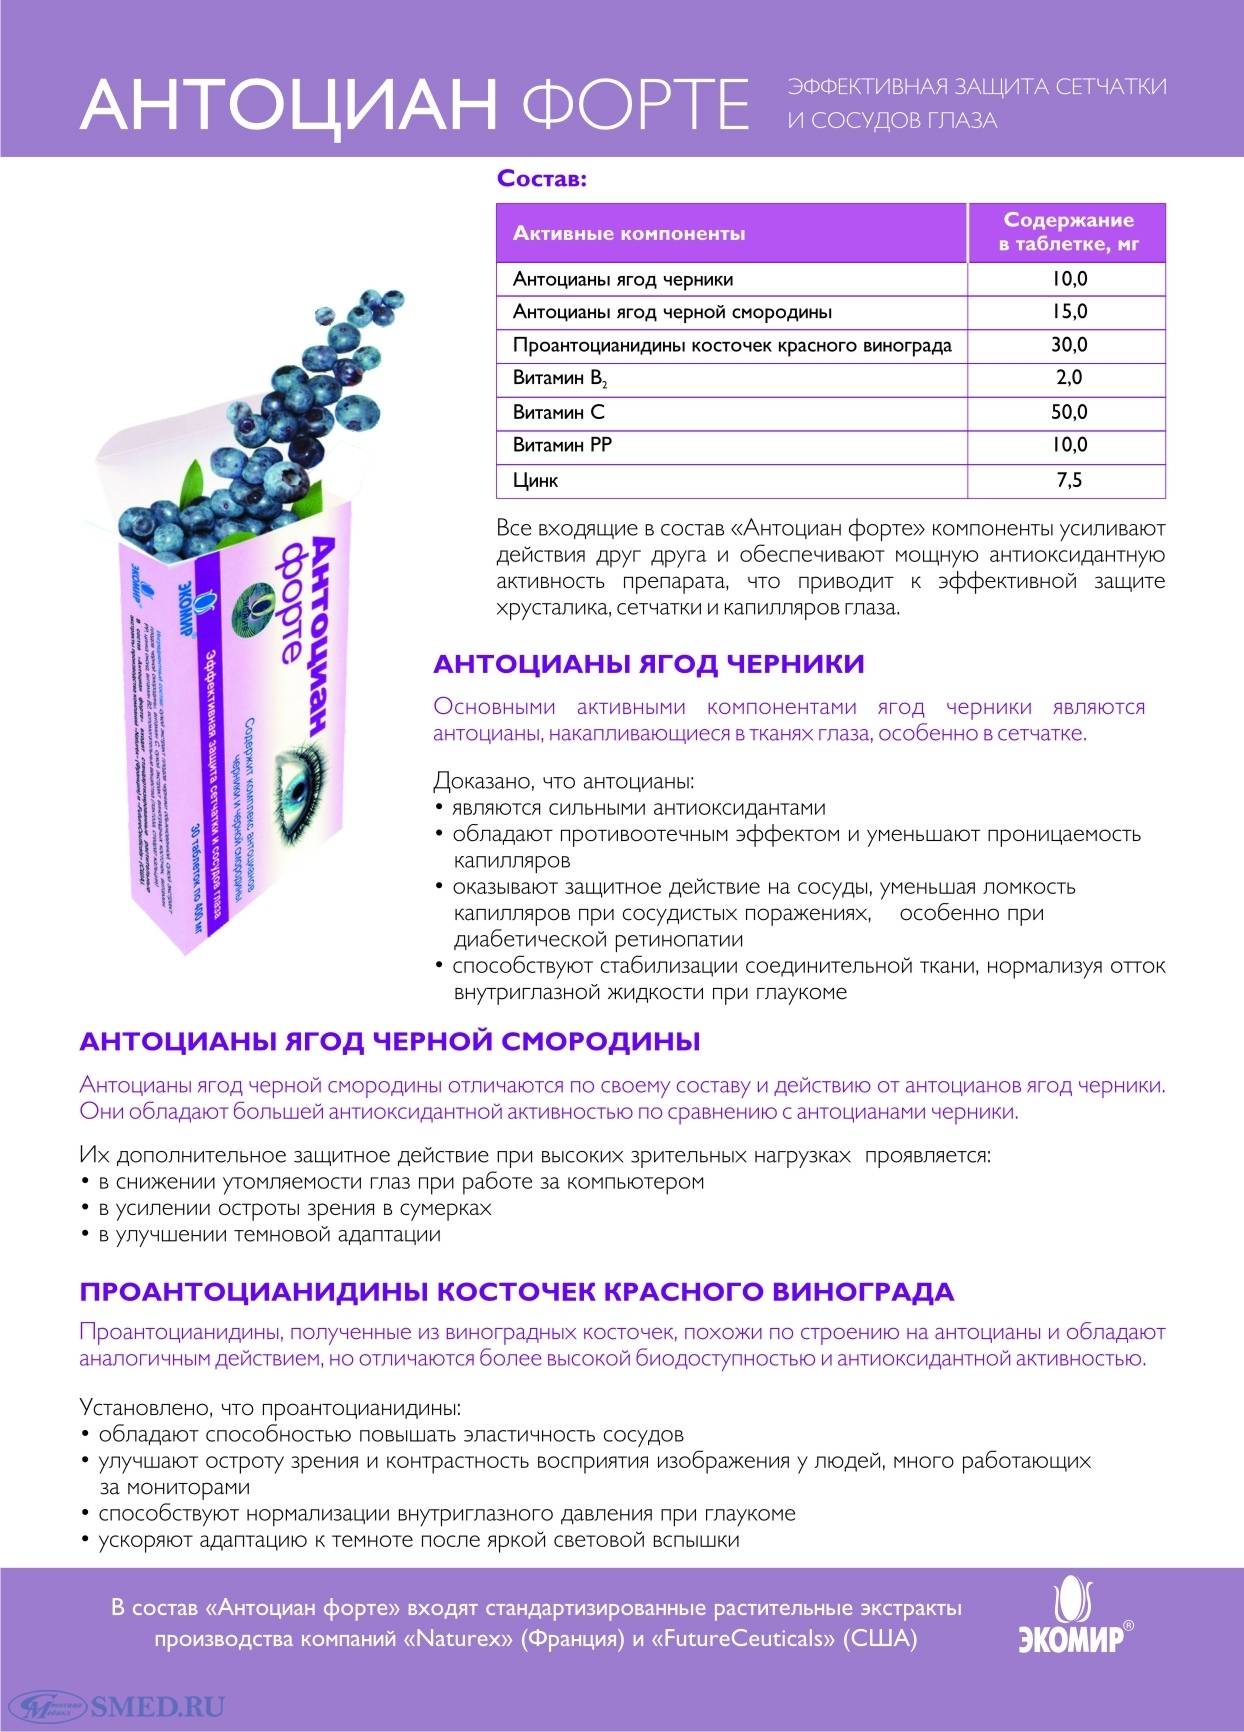 Антоциан форте аналоги - medcentre24.ru - справочник лекарств, отзывы о клиниках и врачах, запись на прием онлайн